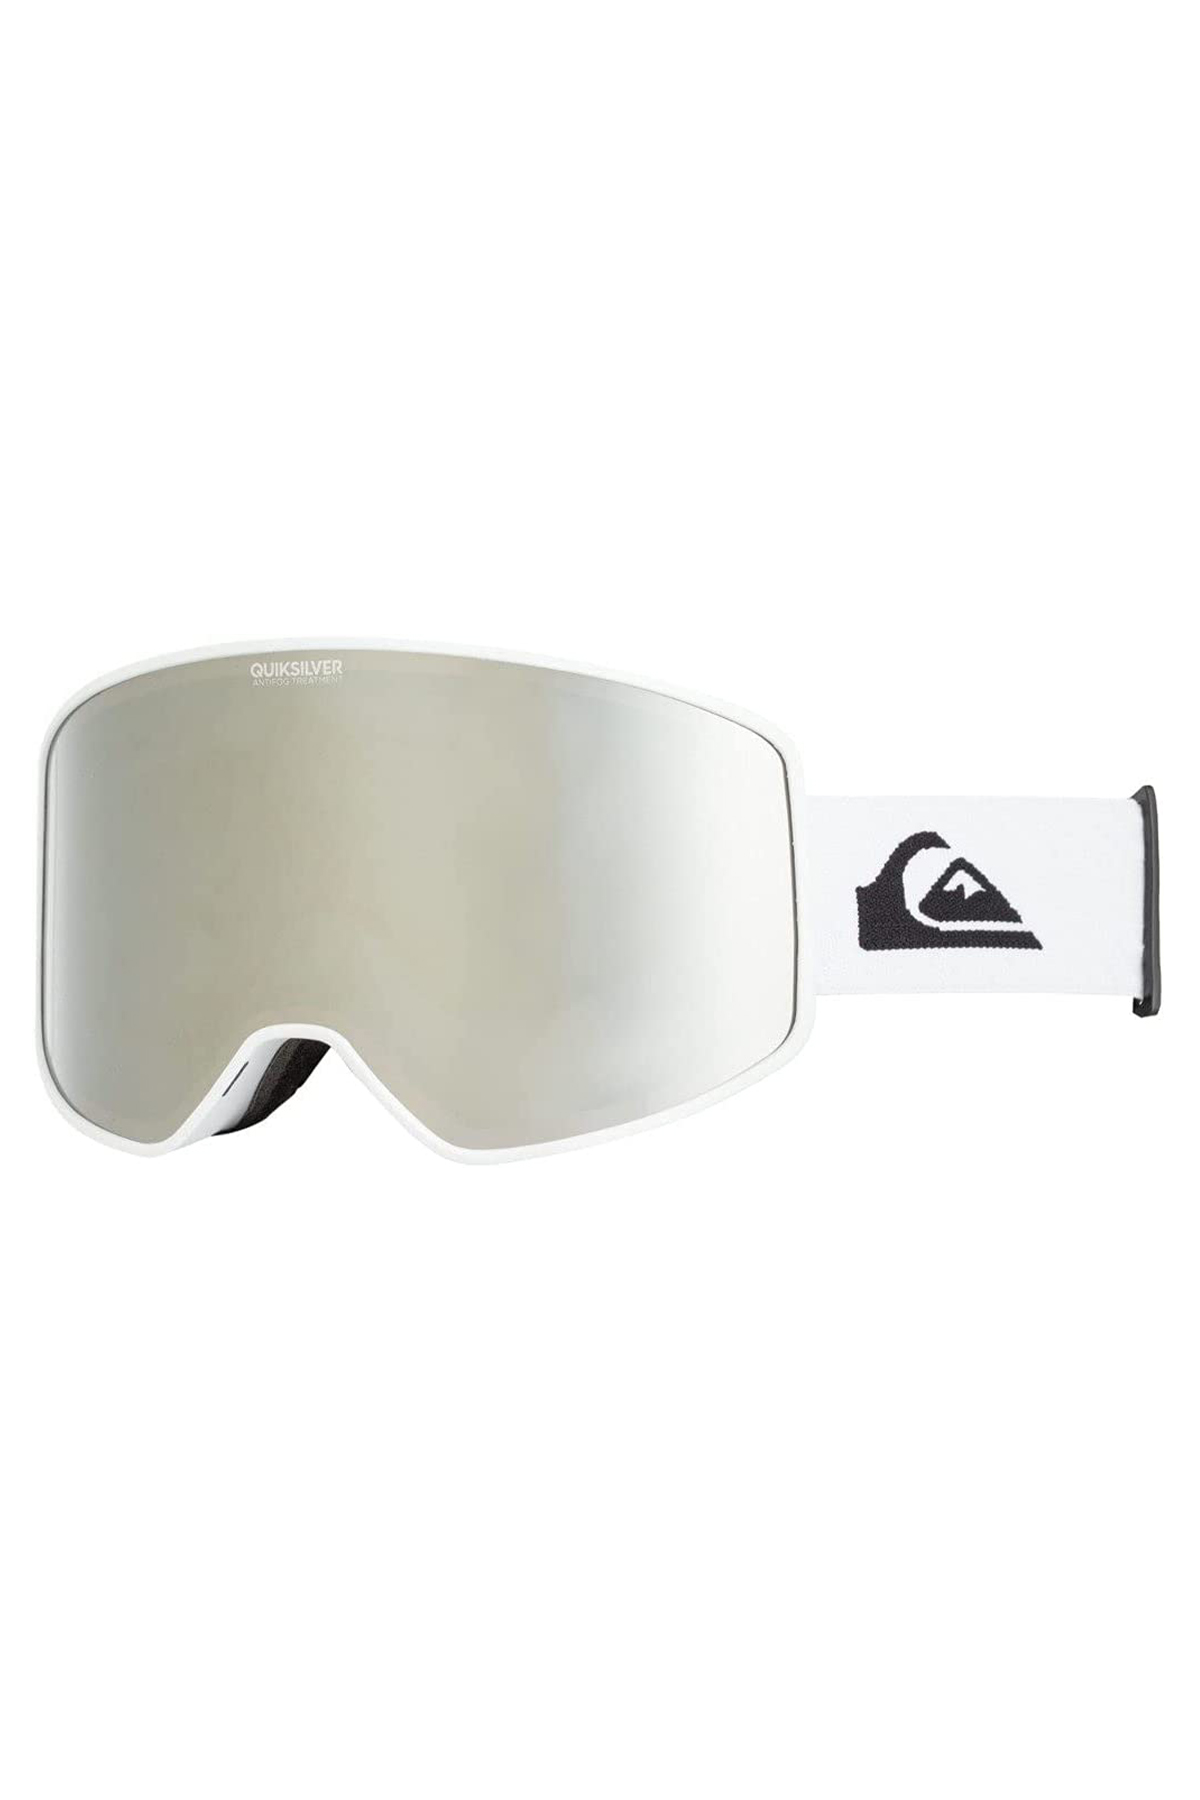 Quiksilver Storm Erkek Beyaz Kayak Gözlüğü